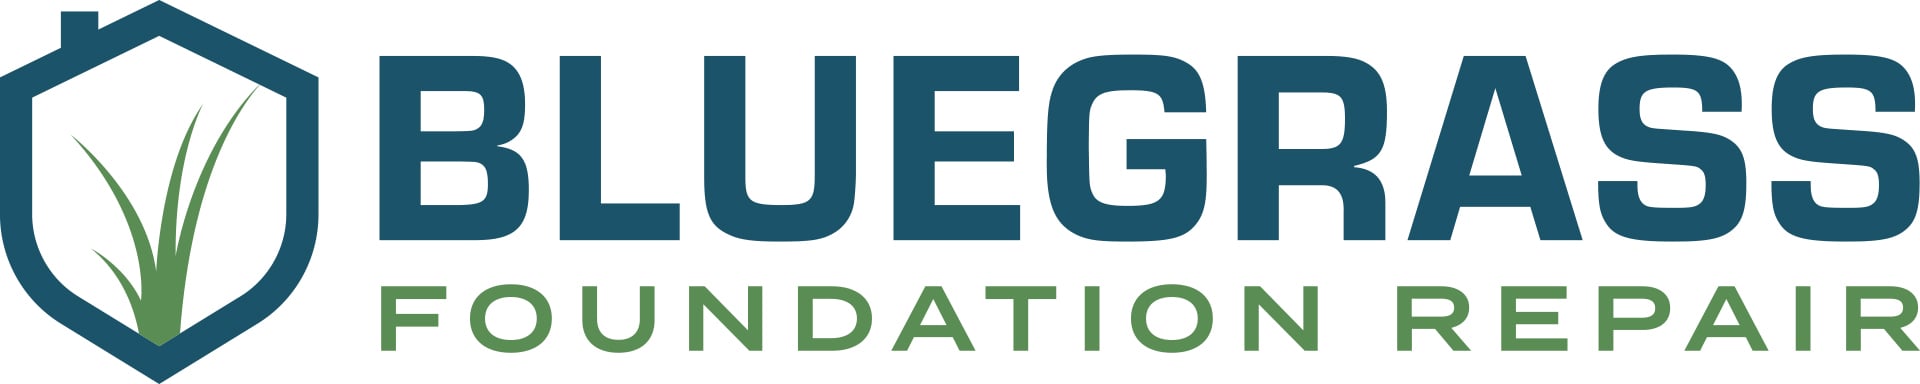 Bluegrass Foundation Repair, LLC Logo